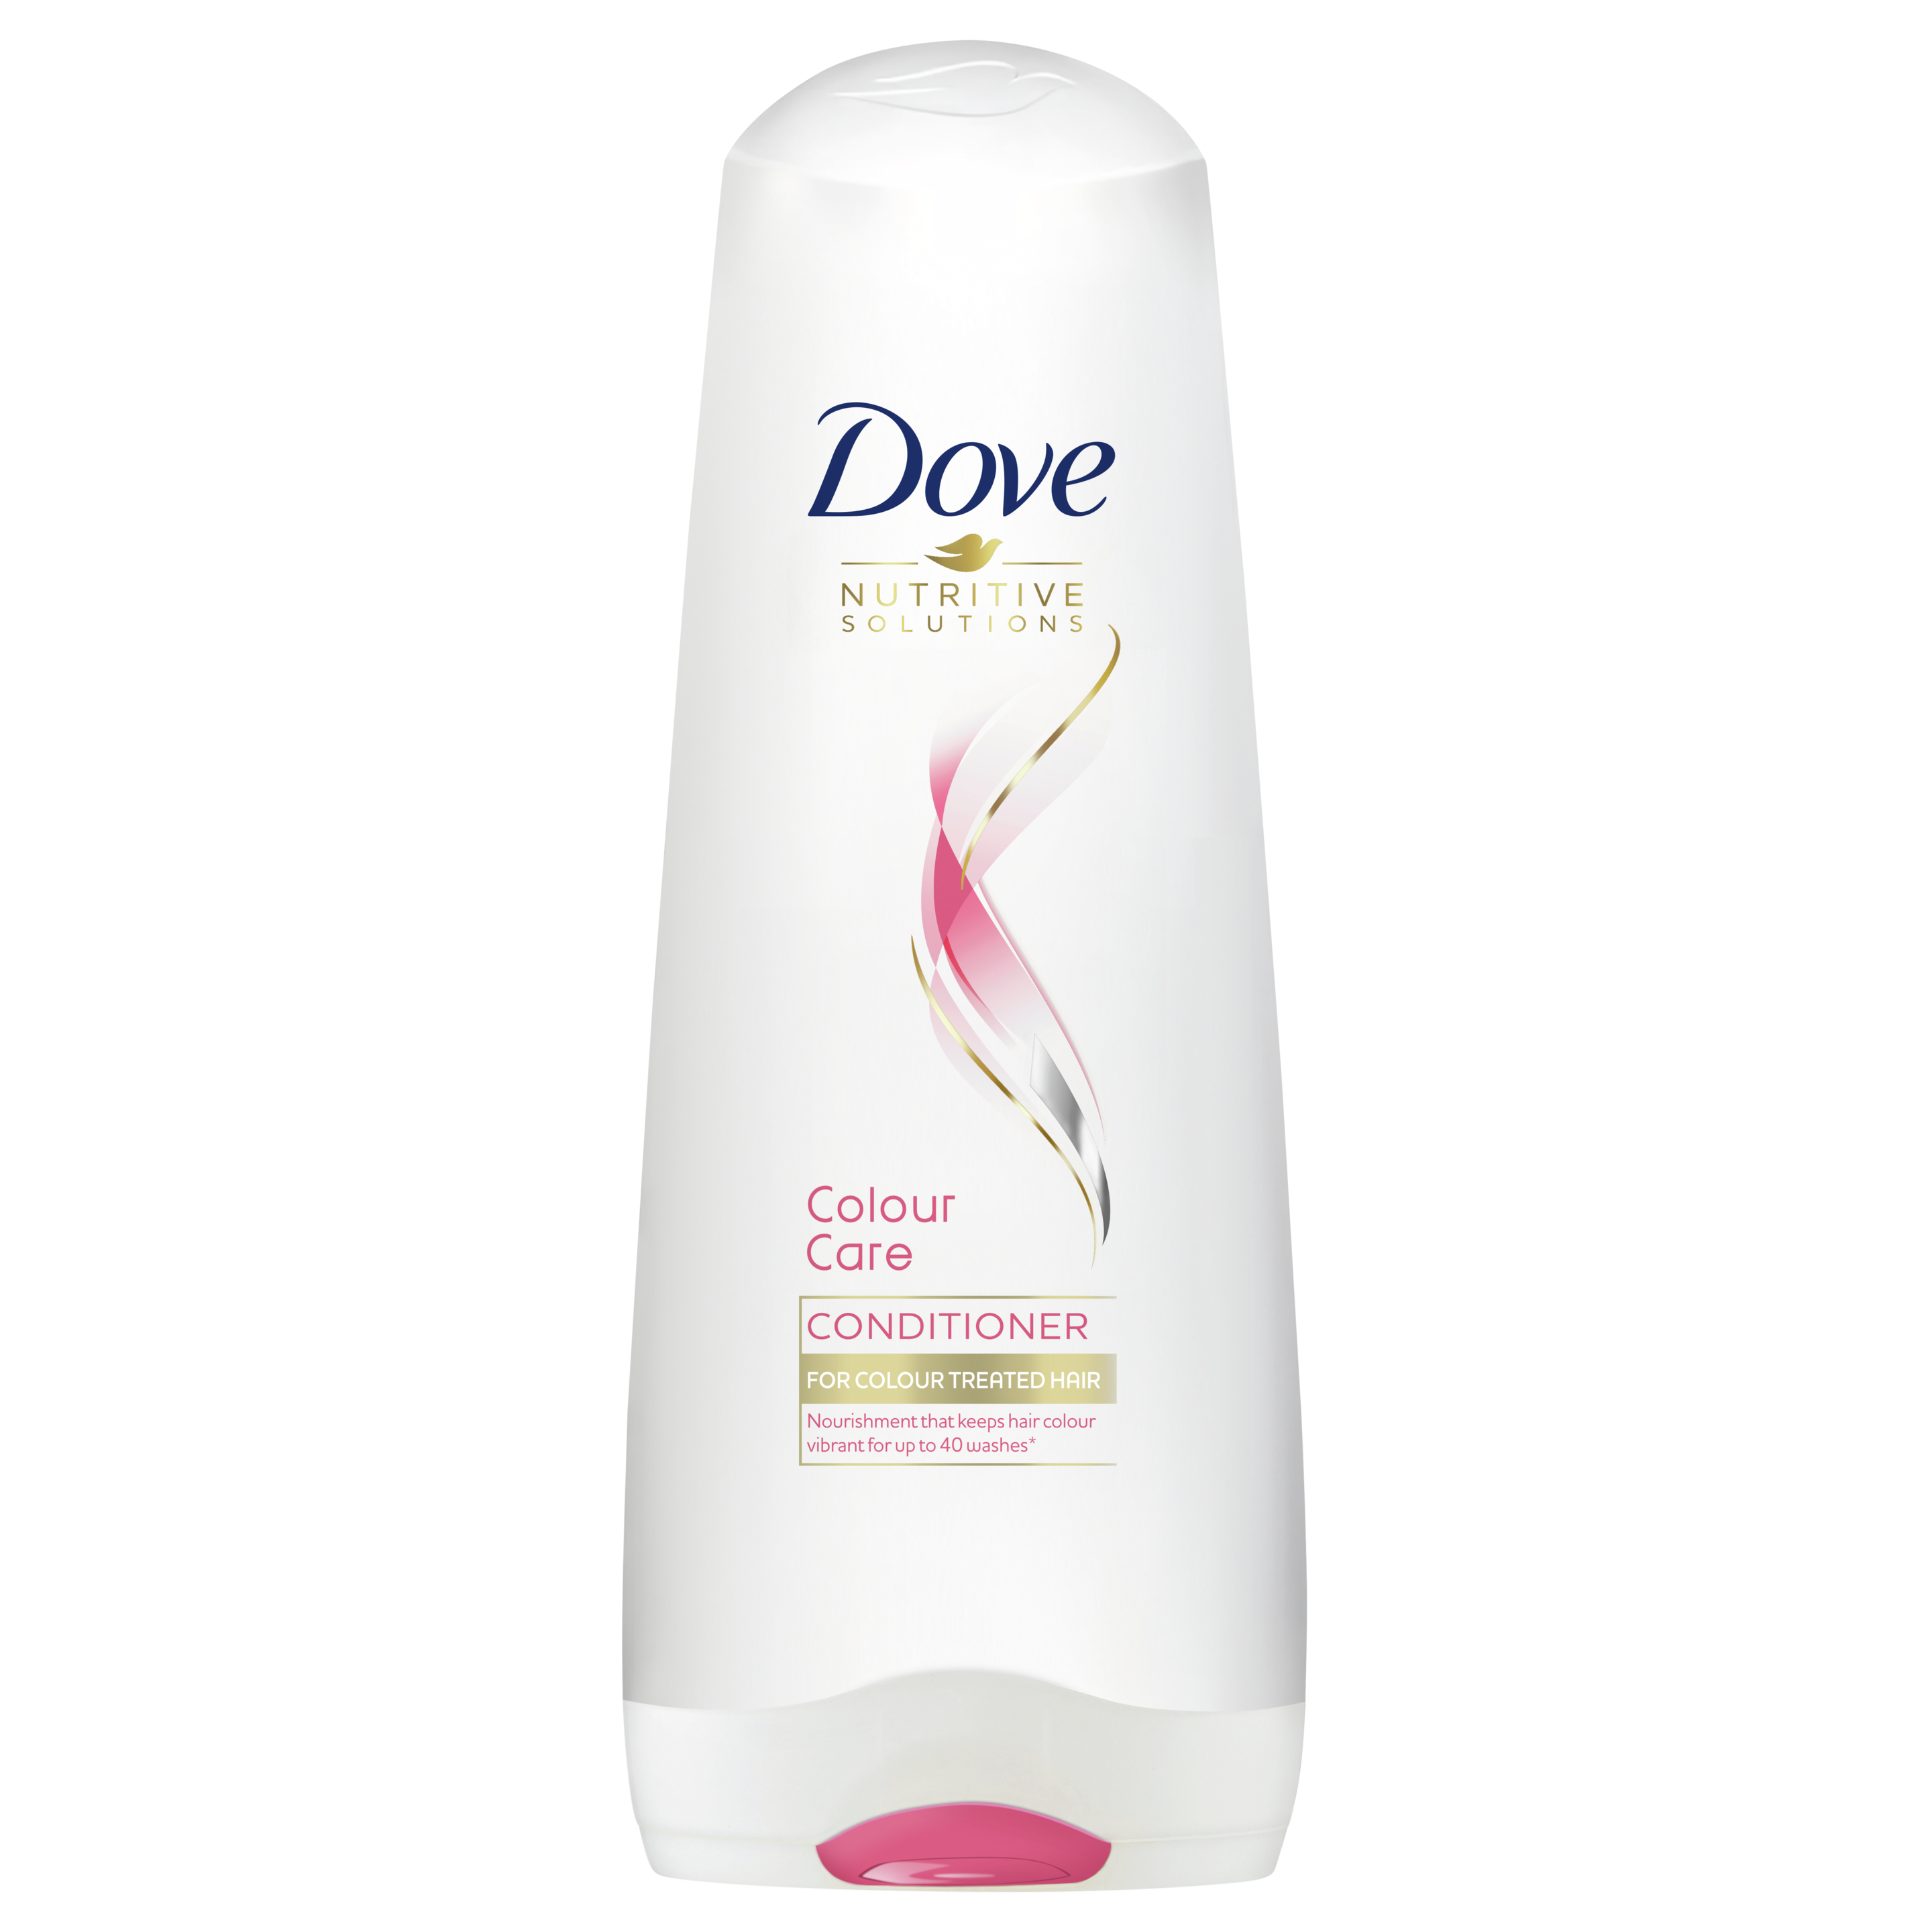 Dove Colour Care Conditioner 200ml